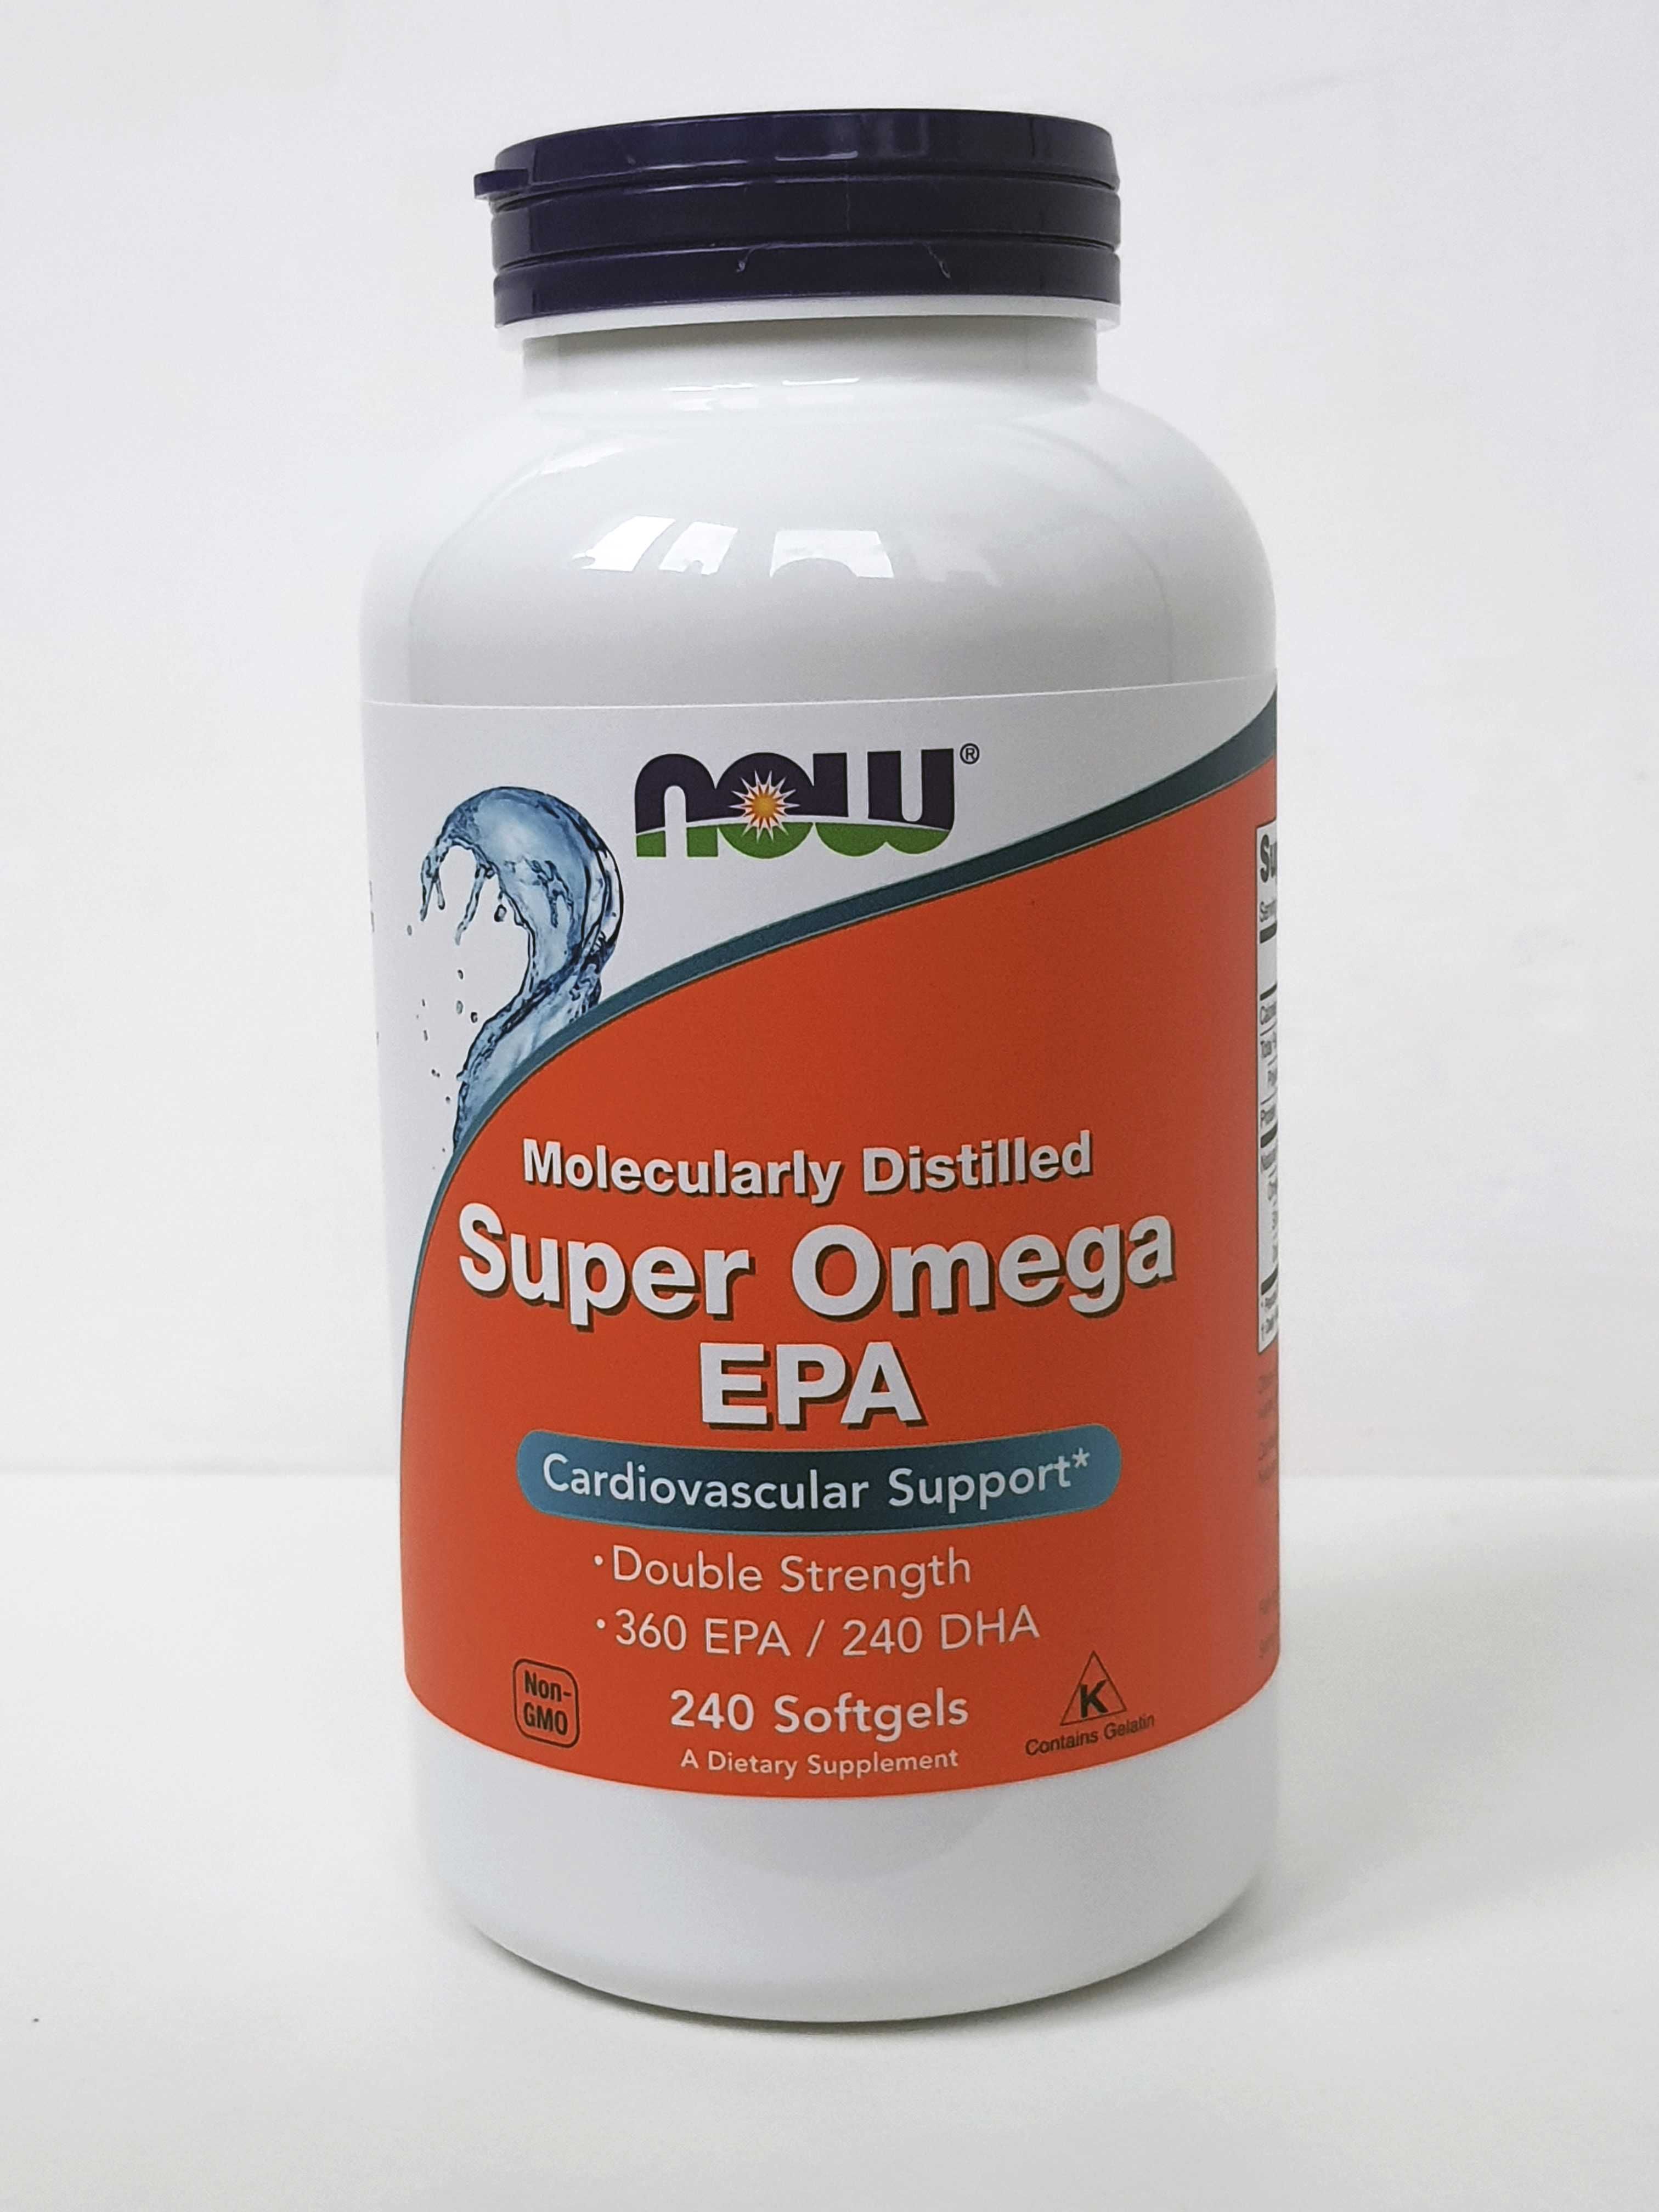 Рыбий жир Now Foods Super Omega EPA, Супер Омега-3 ЭПК, 120/240 капсул